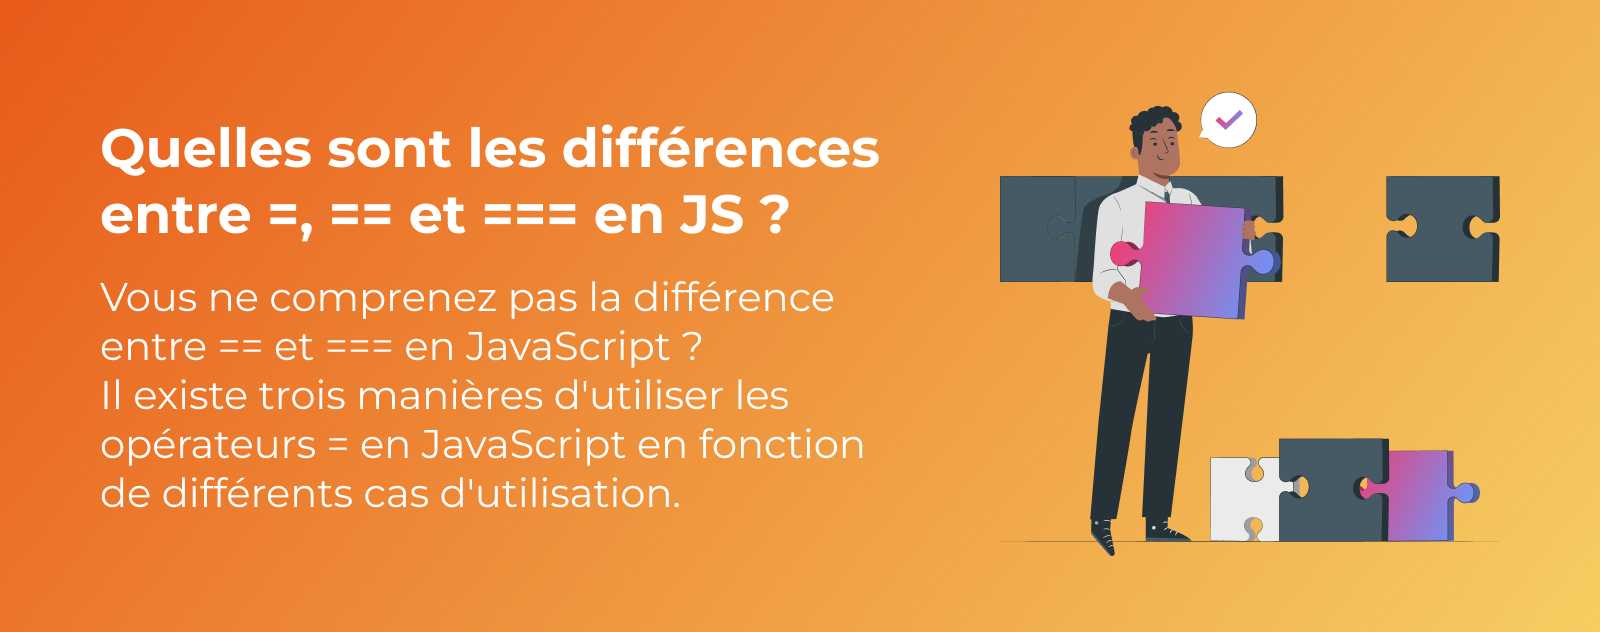 Quelle est la différence entre =, == et === en JavaScript ?